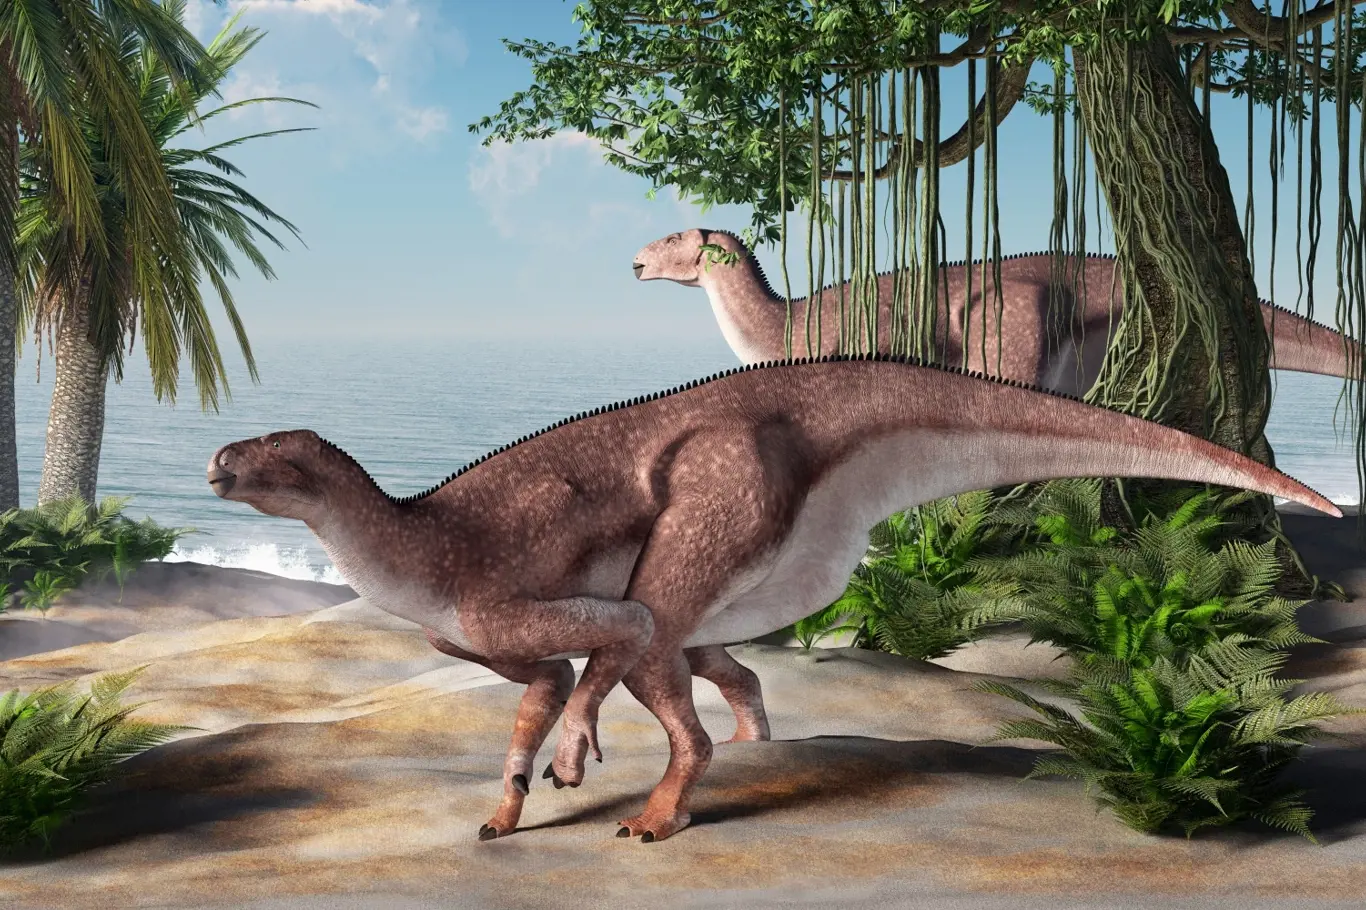 Pár leguánů se živí nedaleko pláže. Jeden z nejznámějších dinosaurů, iguanodon, žil na území dnešní Evropy přibližně před 125 miliony let.